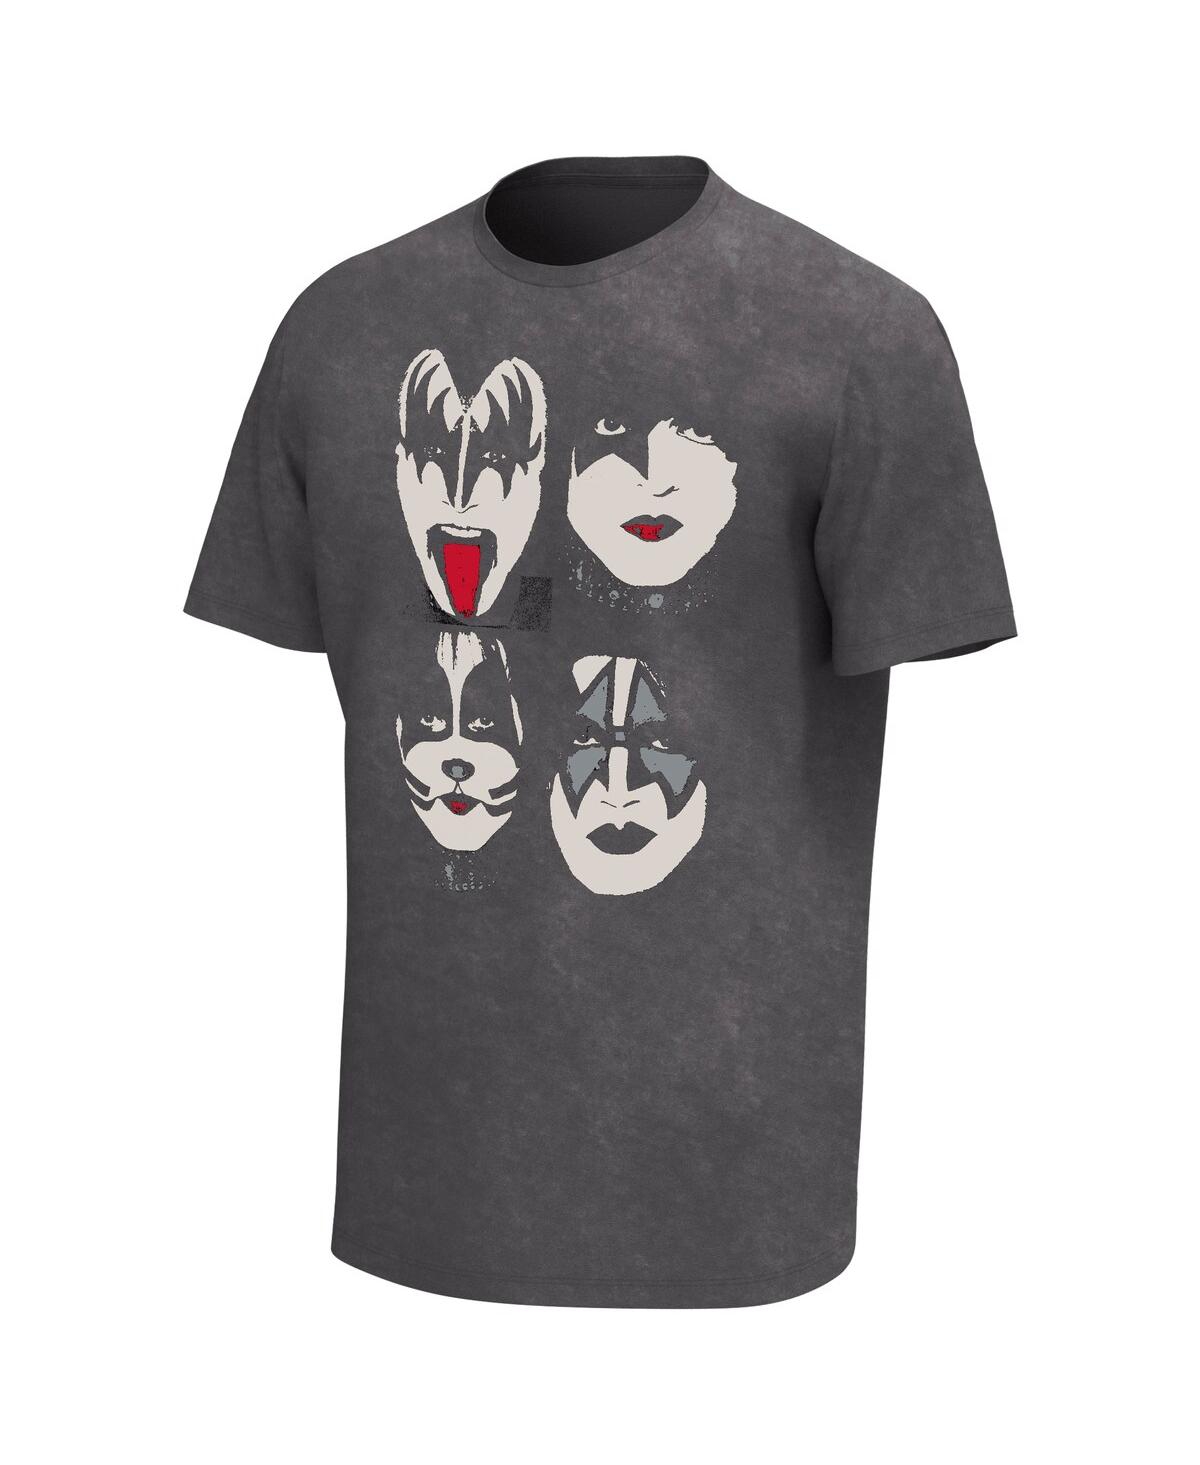 Shop Philcos Men's Black Kiss Faces Washed Graphic T-shirt